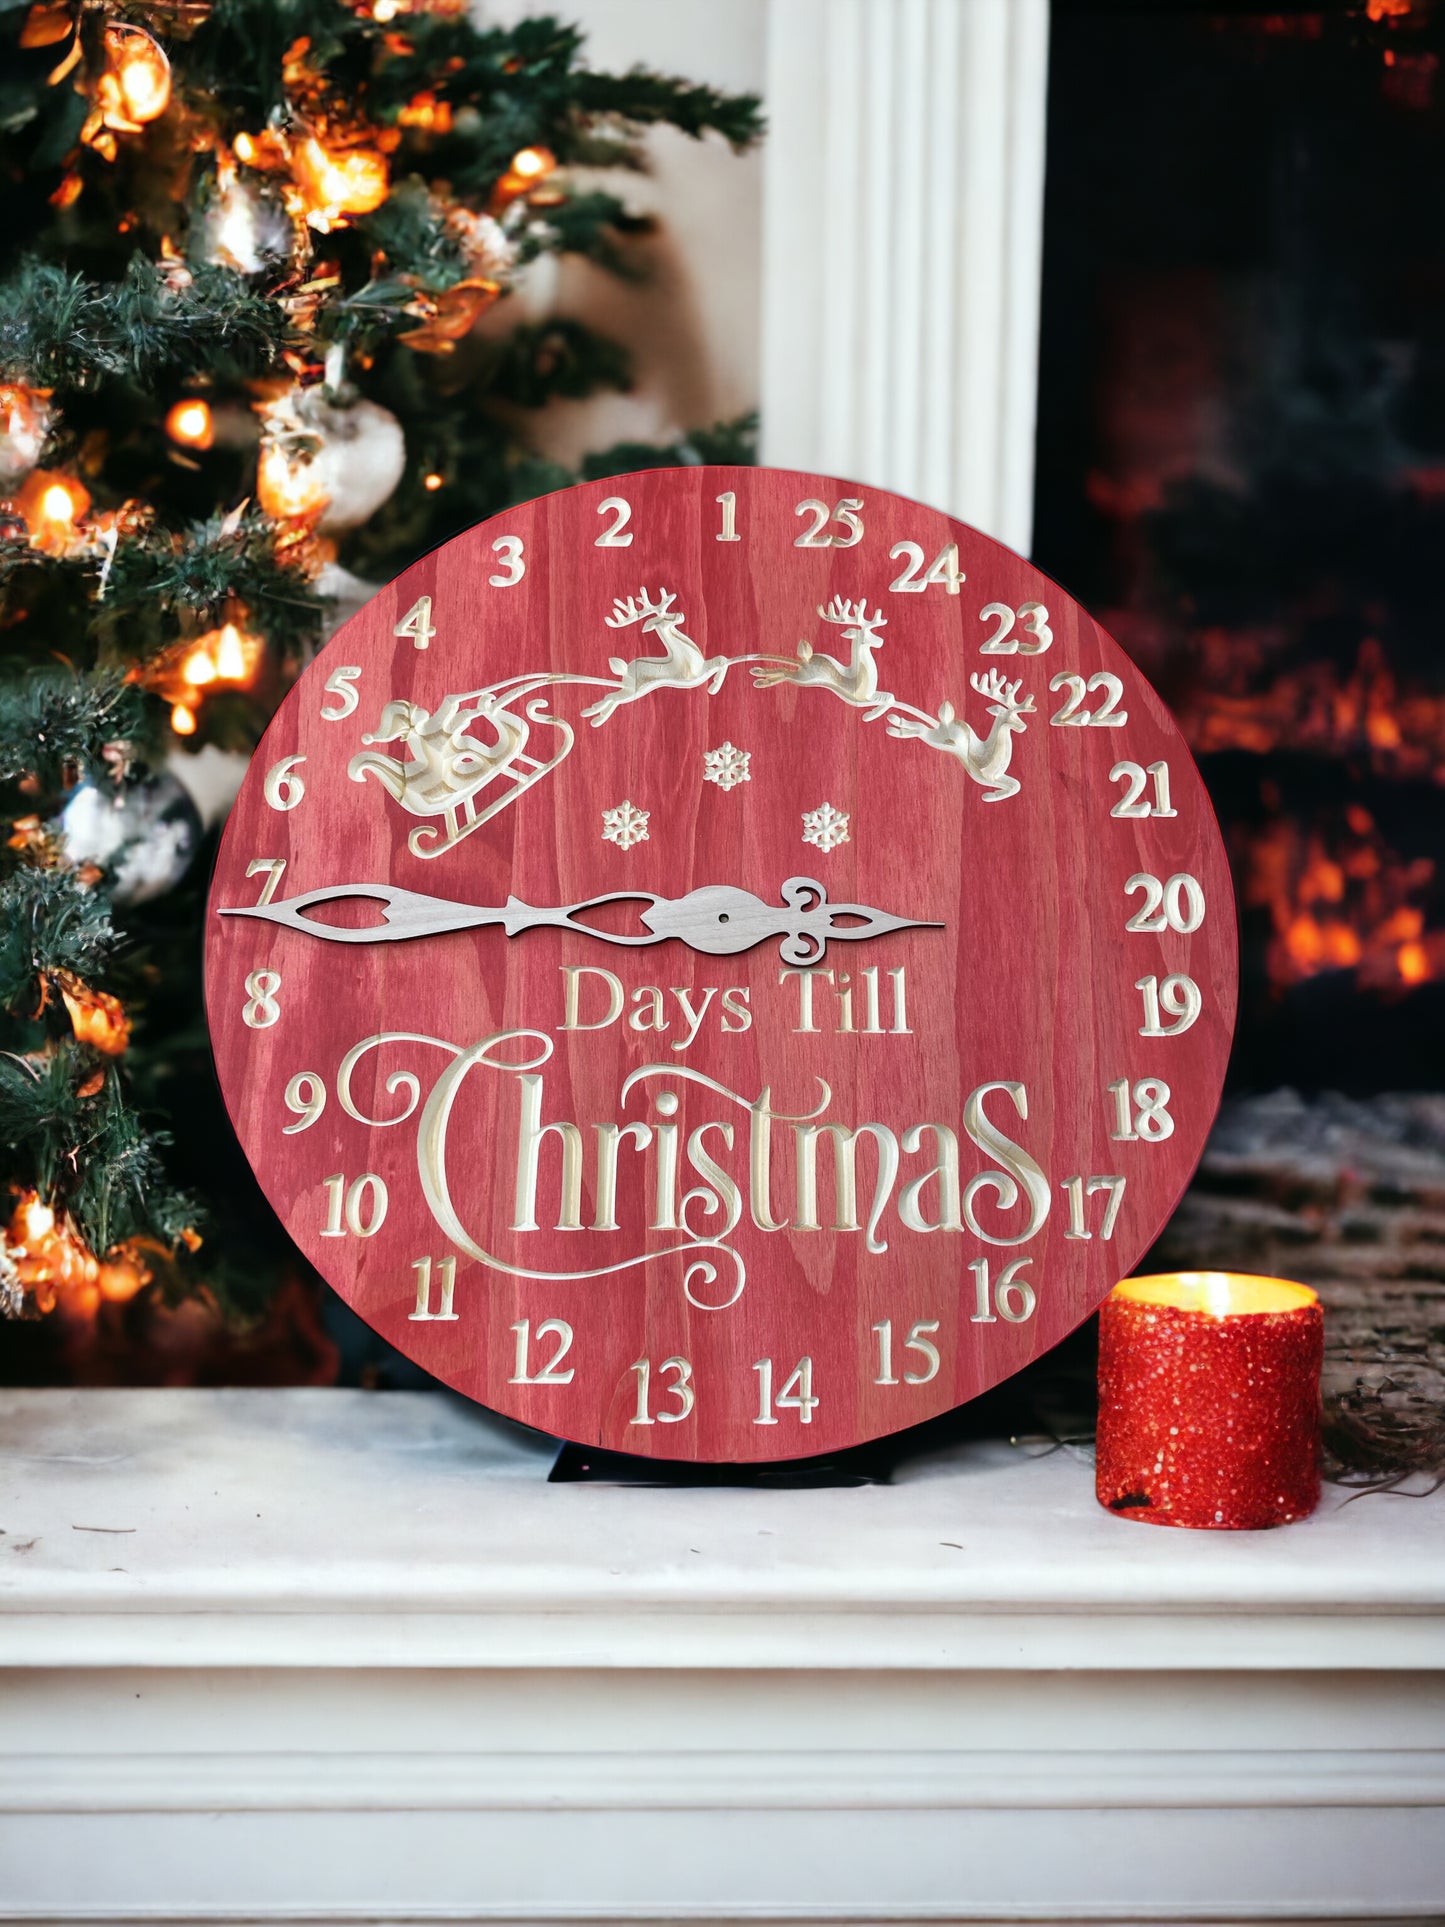 "Days til Christmas" wood clock